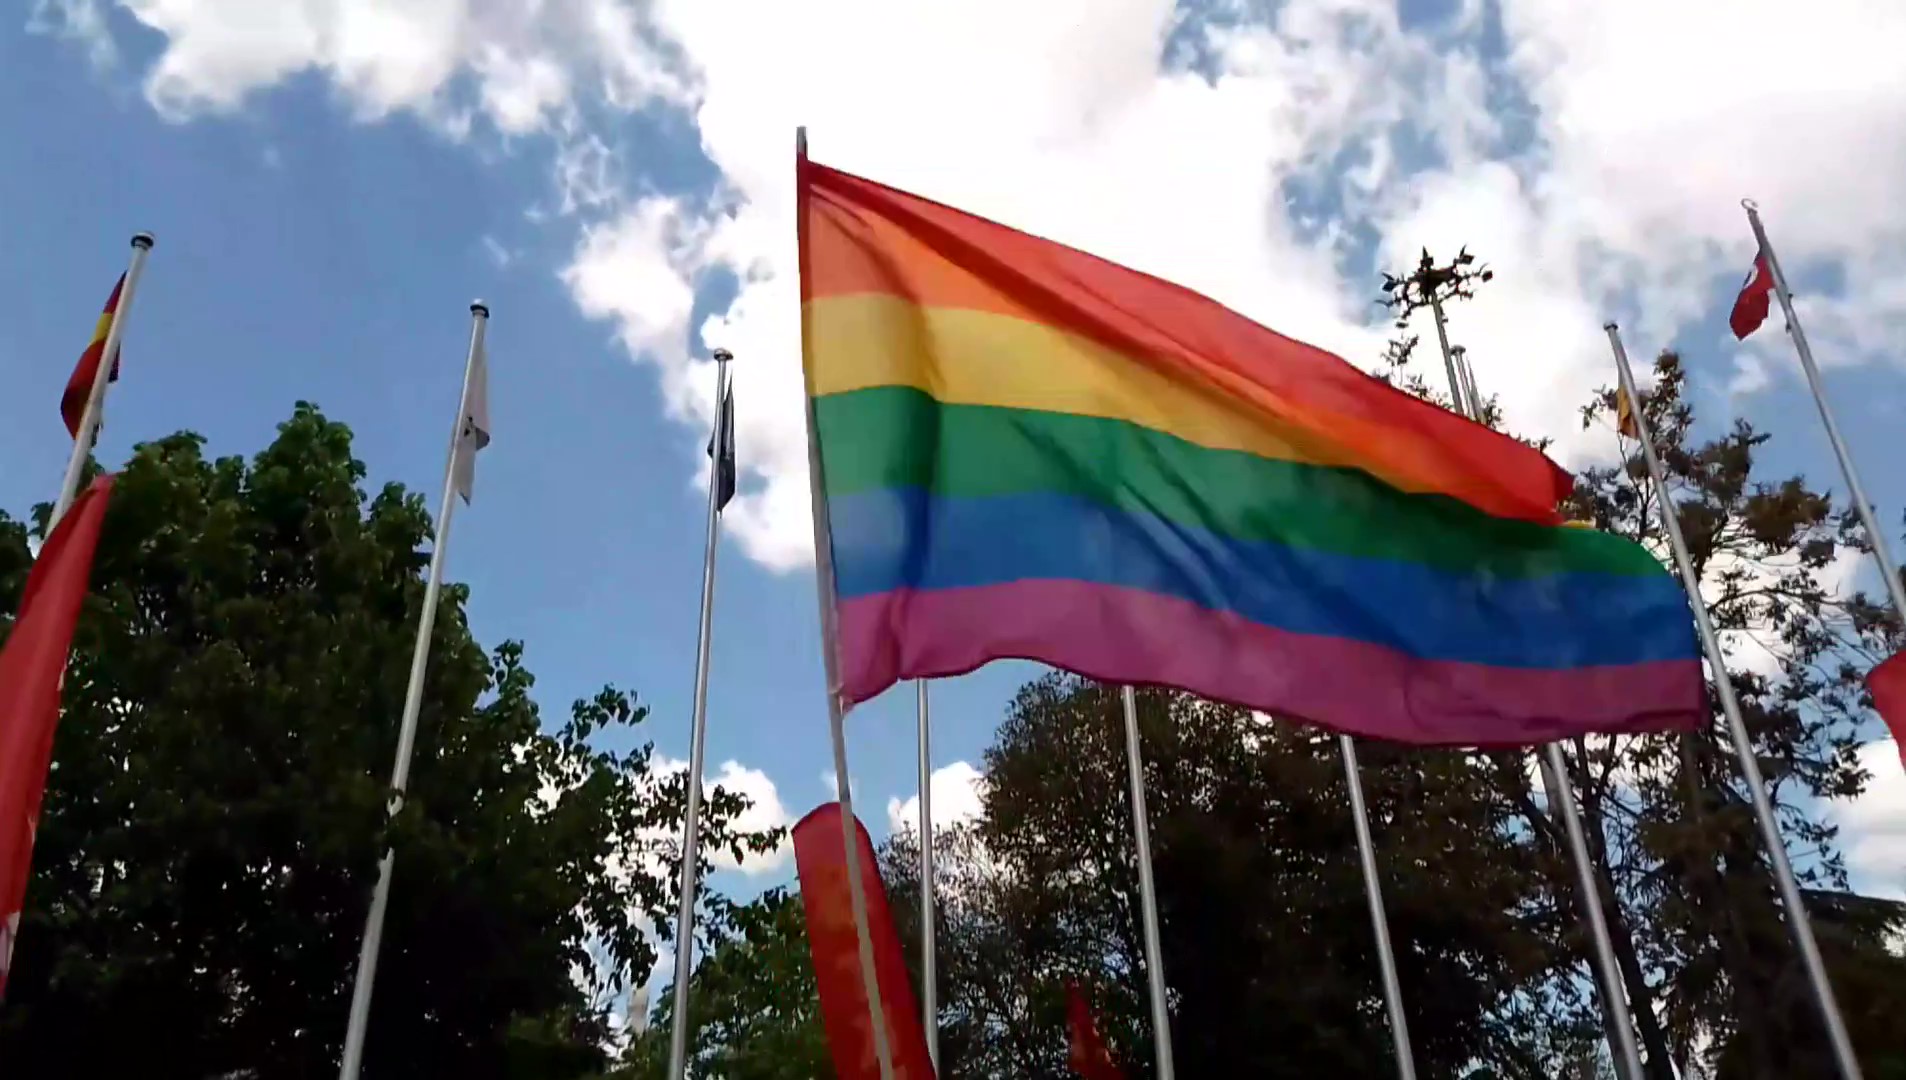 Antep Queer, 1 Mayıs’ta alanında uğradığı tacize ses çıkarıyor: Gökkuşağı değil ayrımcılık suç! Kaos GL - LGBTİ+ Haber Portalı